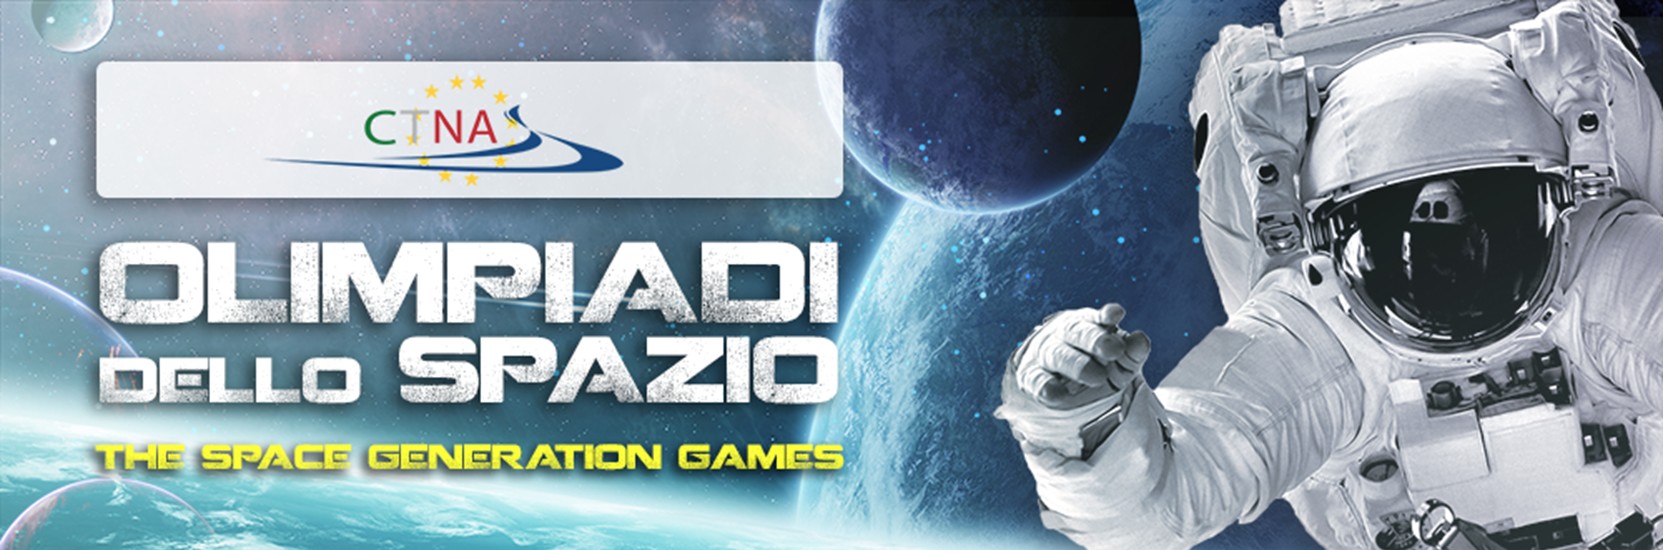 Olimpiadi dello Spazio, The Space Generation Games